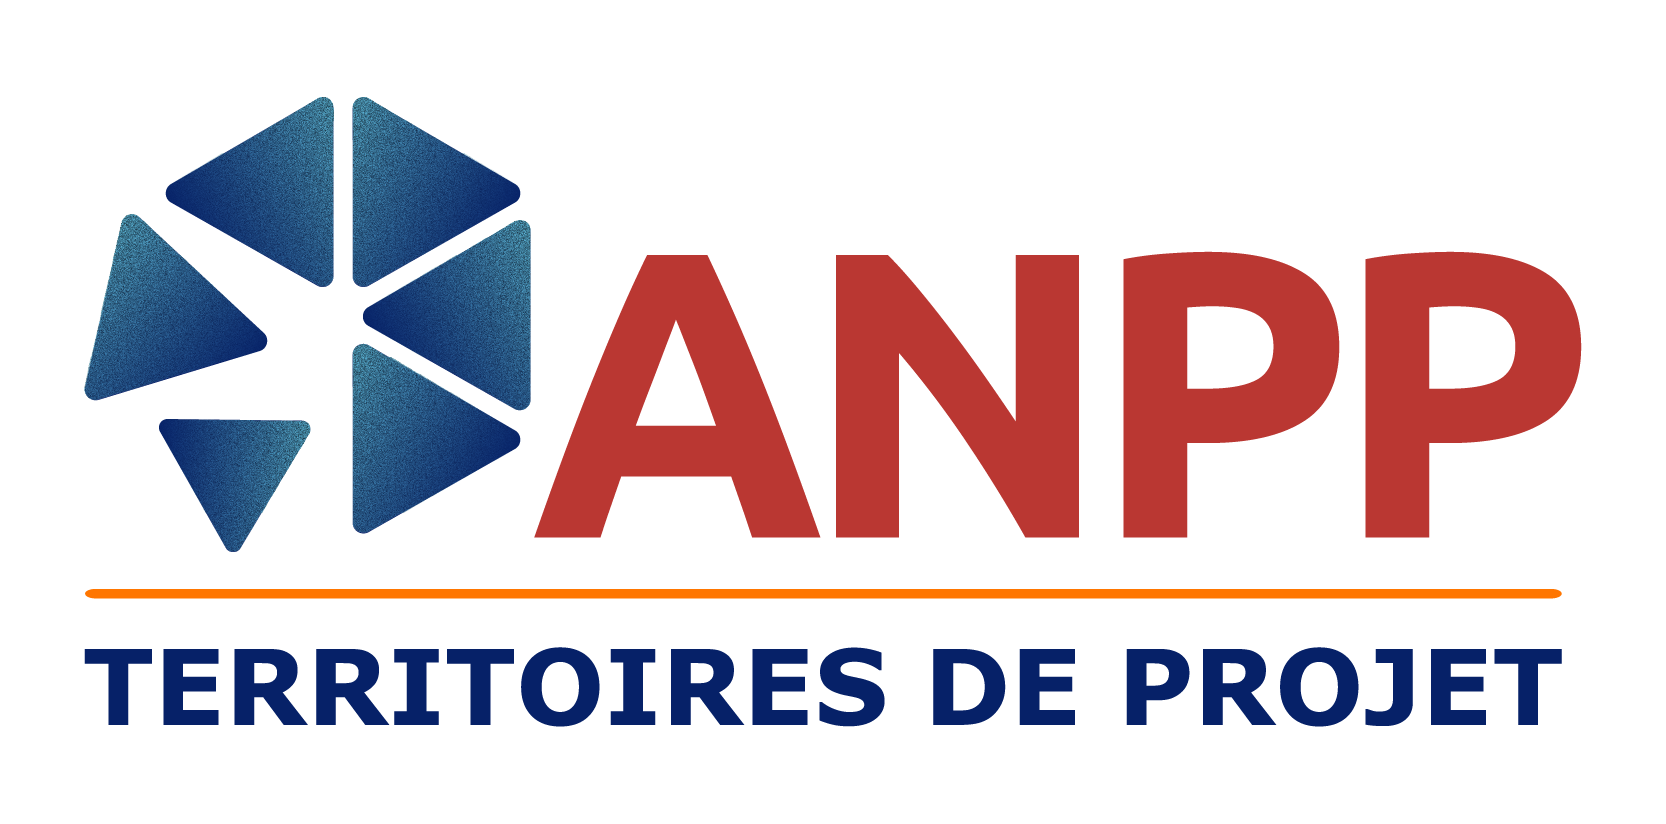 Logo ANPP